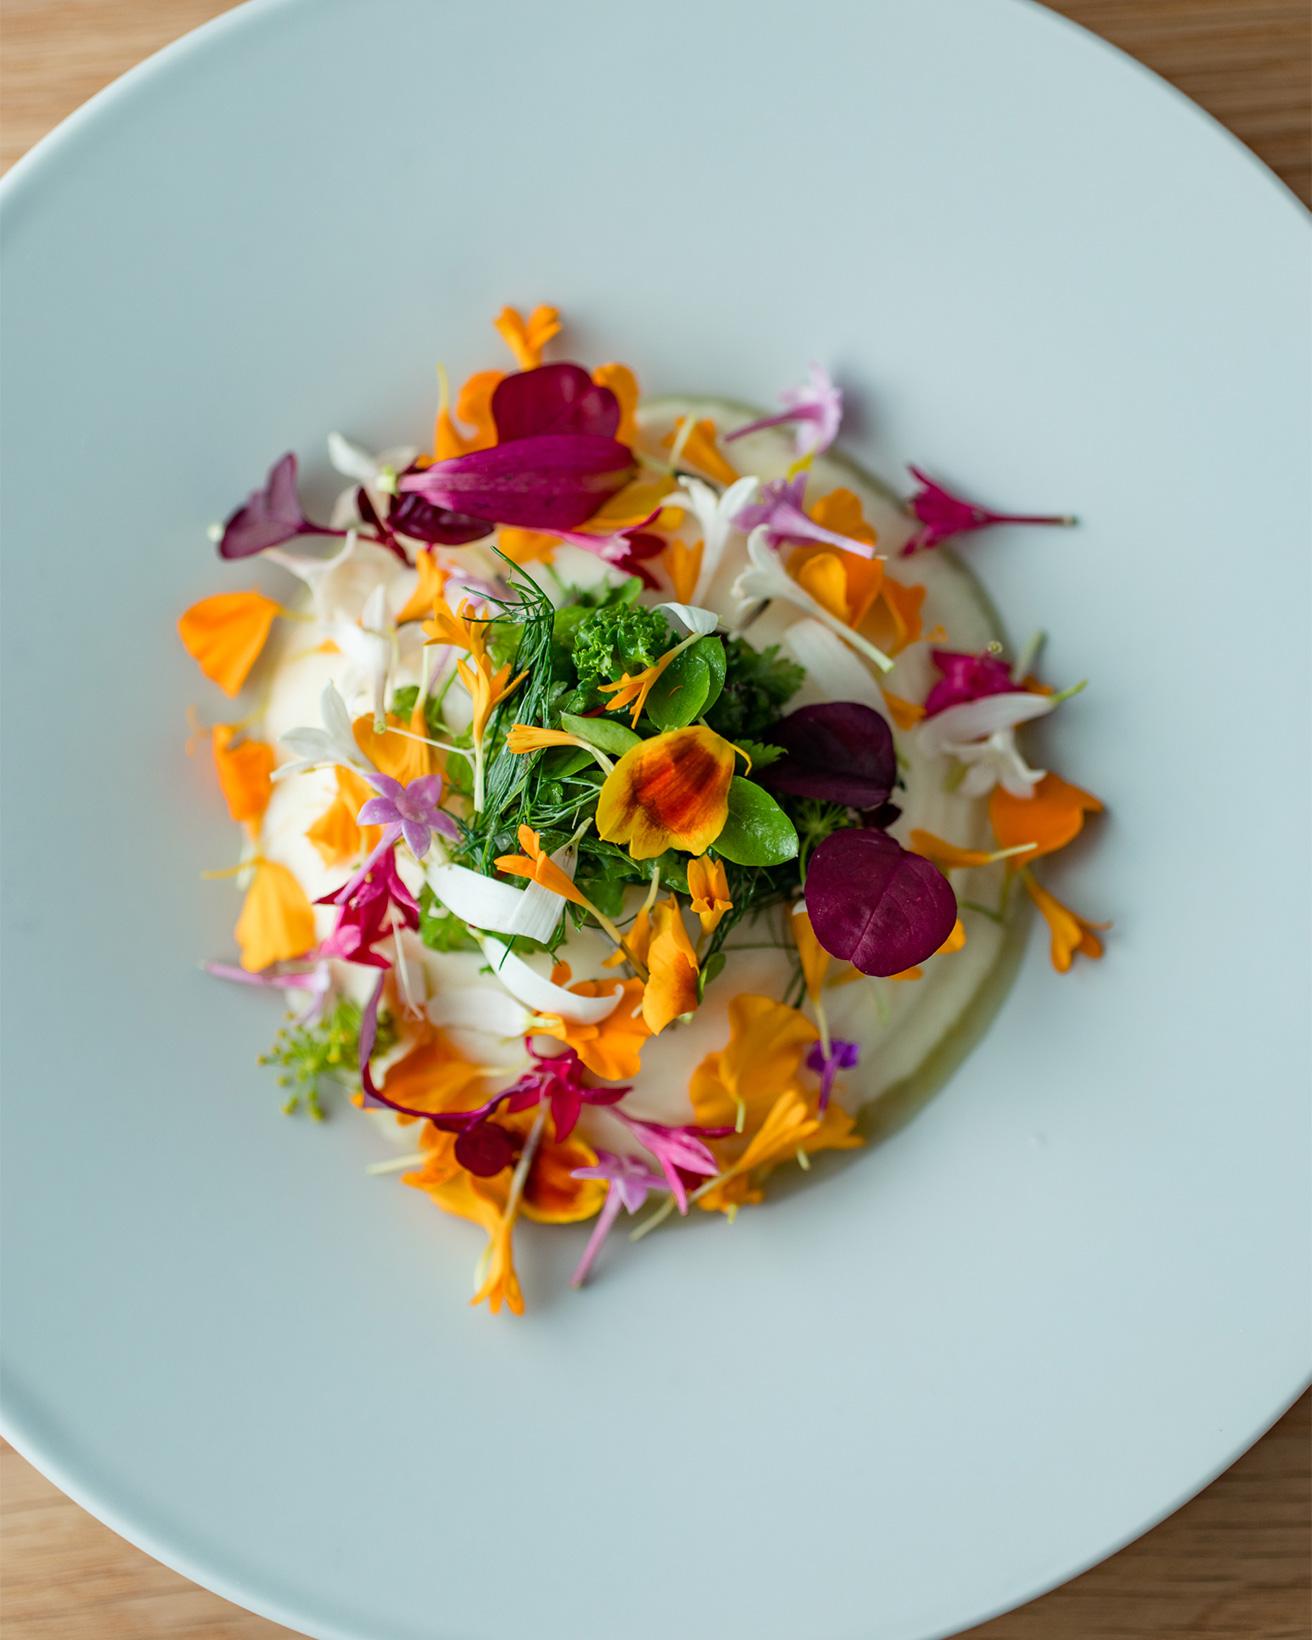 「ホエームースのサラダ」土曜のランチコース5,500円の前菜。ウイキョウや大根の花は、実の状態を思わせる風味がある。